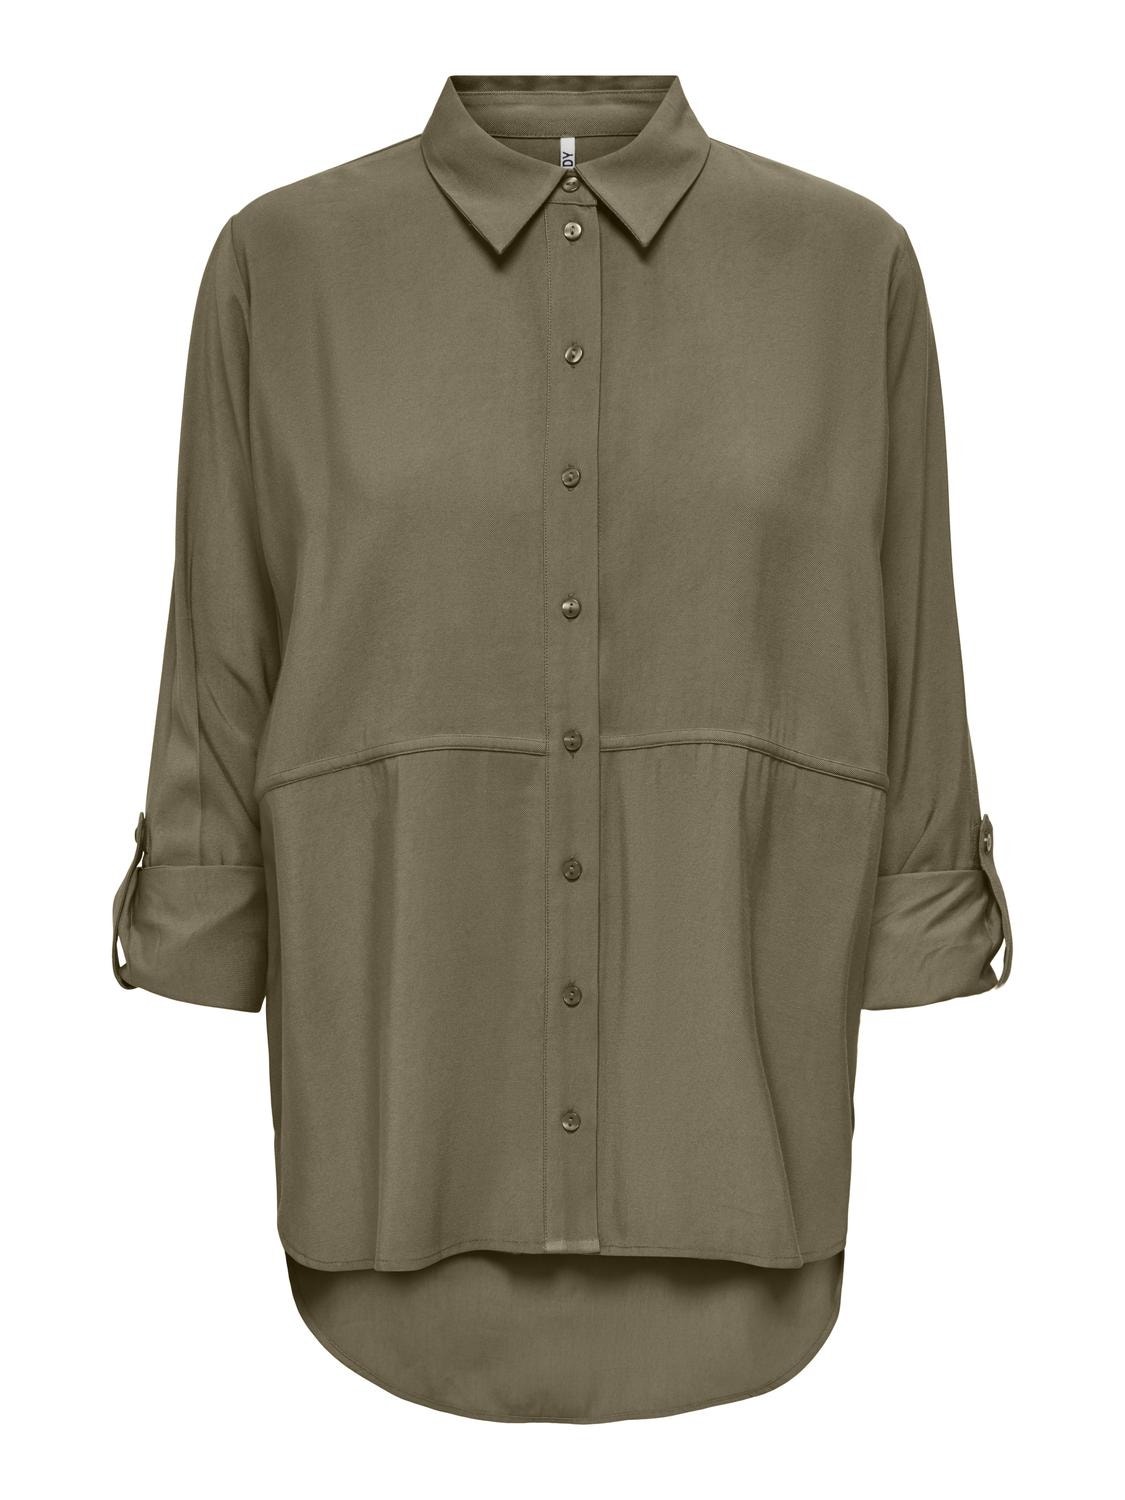 ONLY Camisas Corte regular Cuello de camisa Puños doblados Mangas voluminosas -Walnut - 15284703